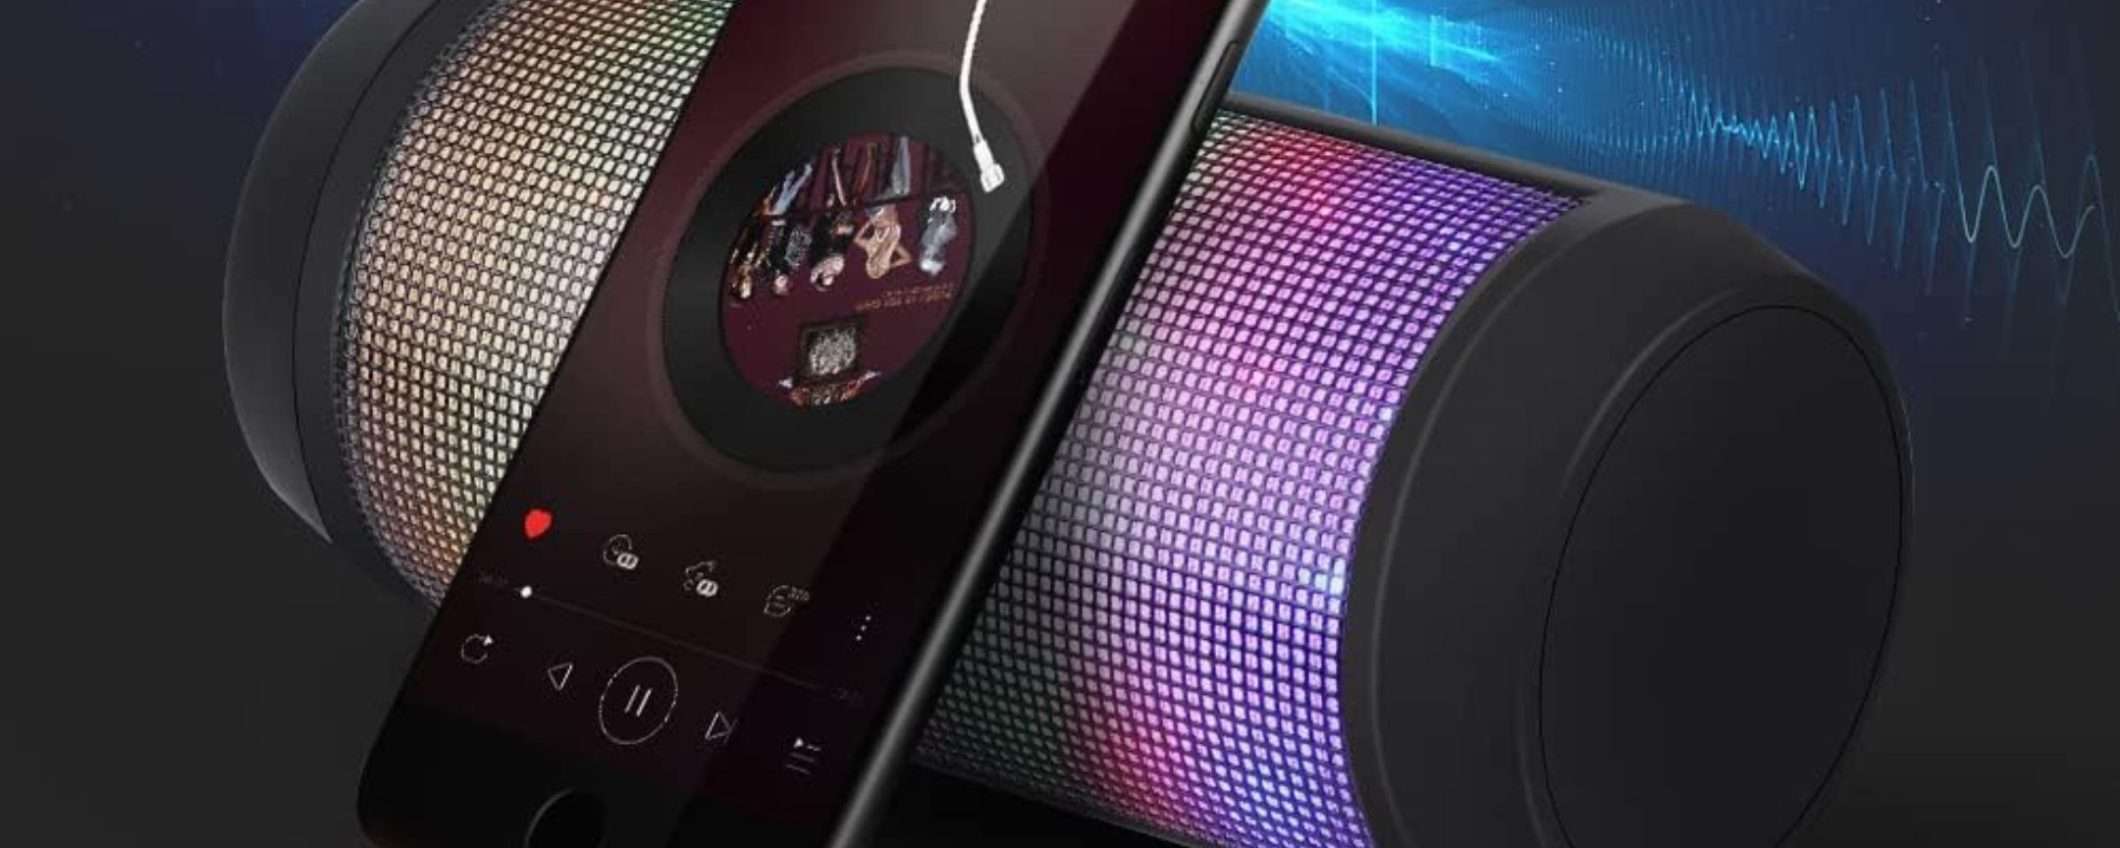 Suono POTENTISSIMO e luci LED: speaker wireless pazzesco a 21€ (Amazon)